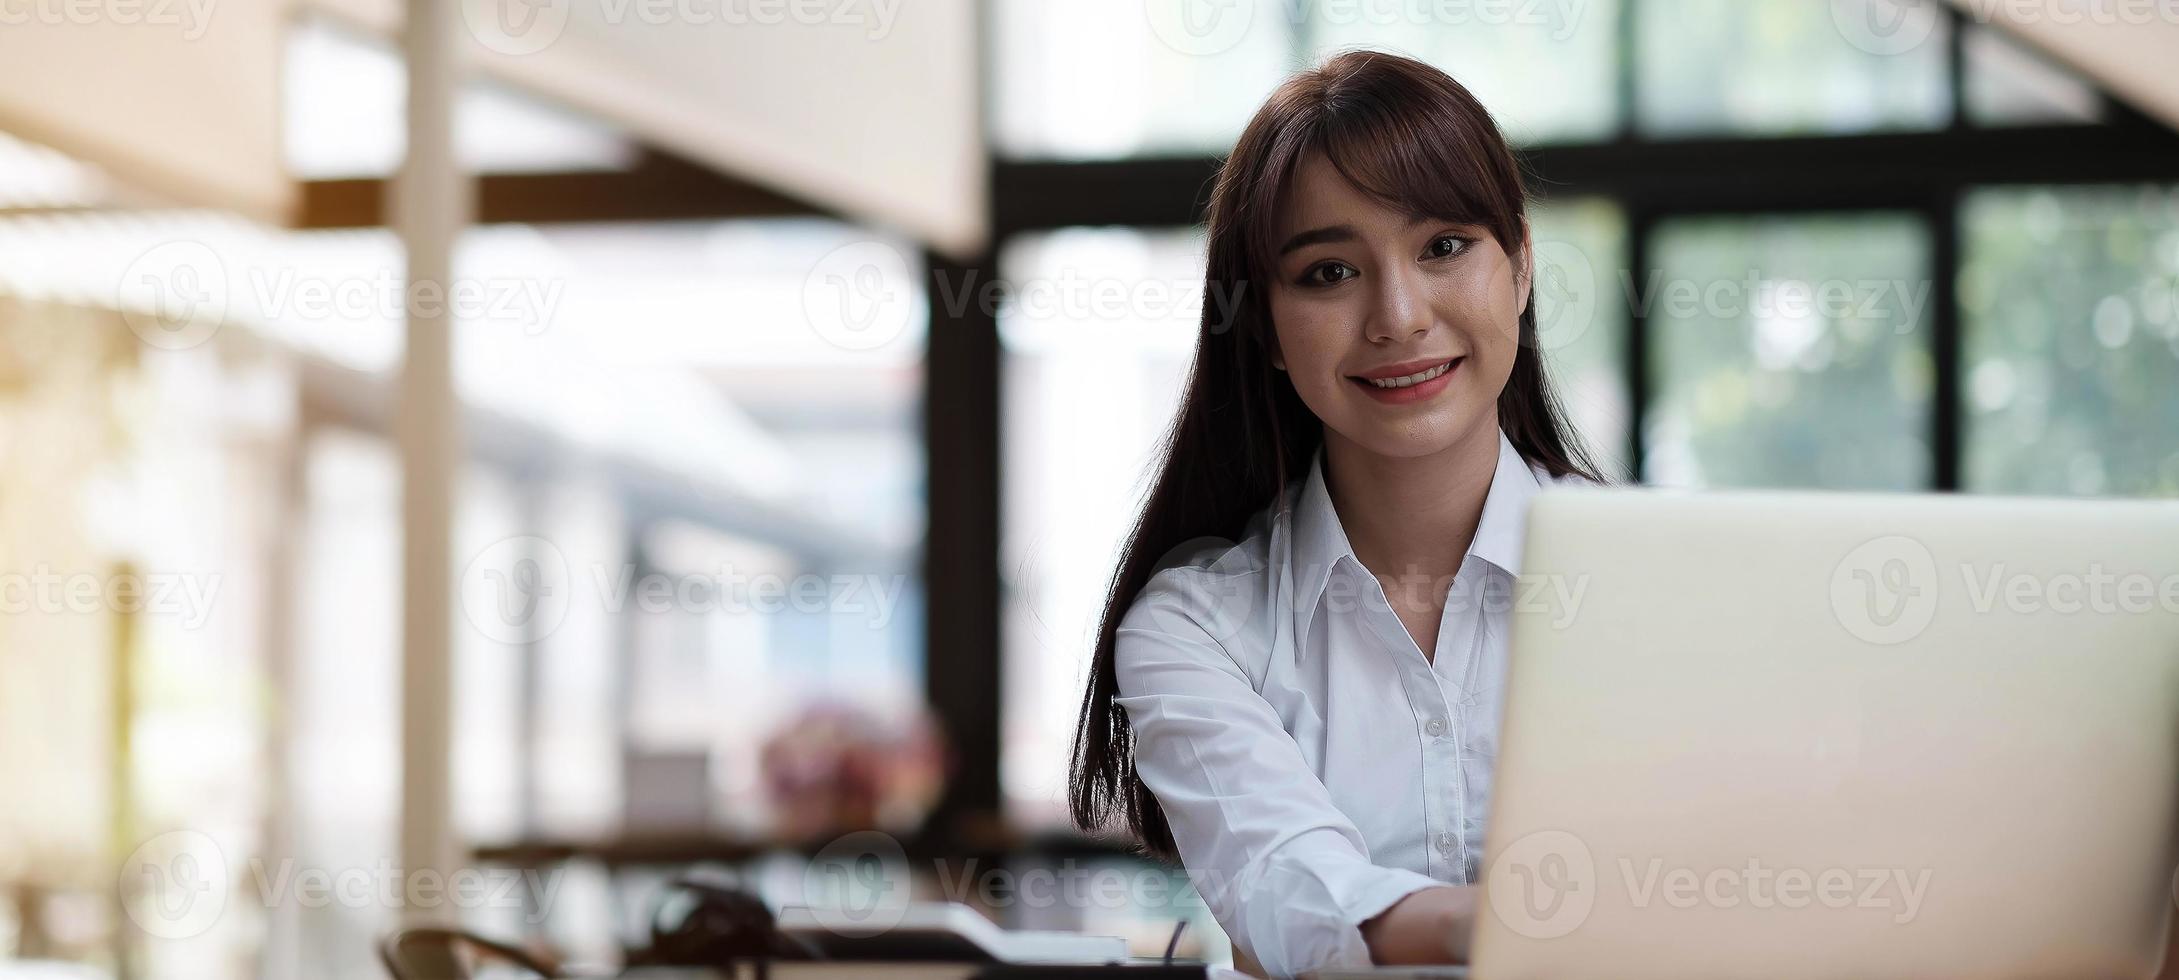 retrato de uma bela jovem estudando enquanto está sentada à mesa foto